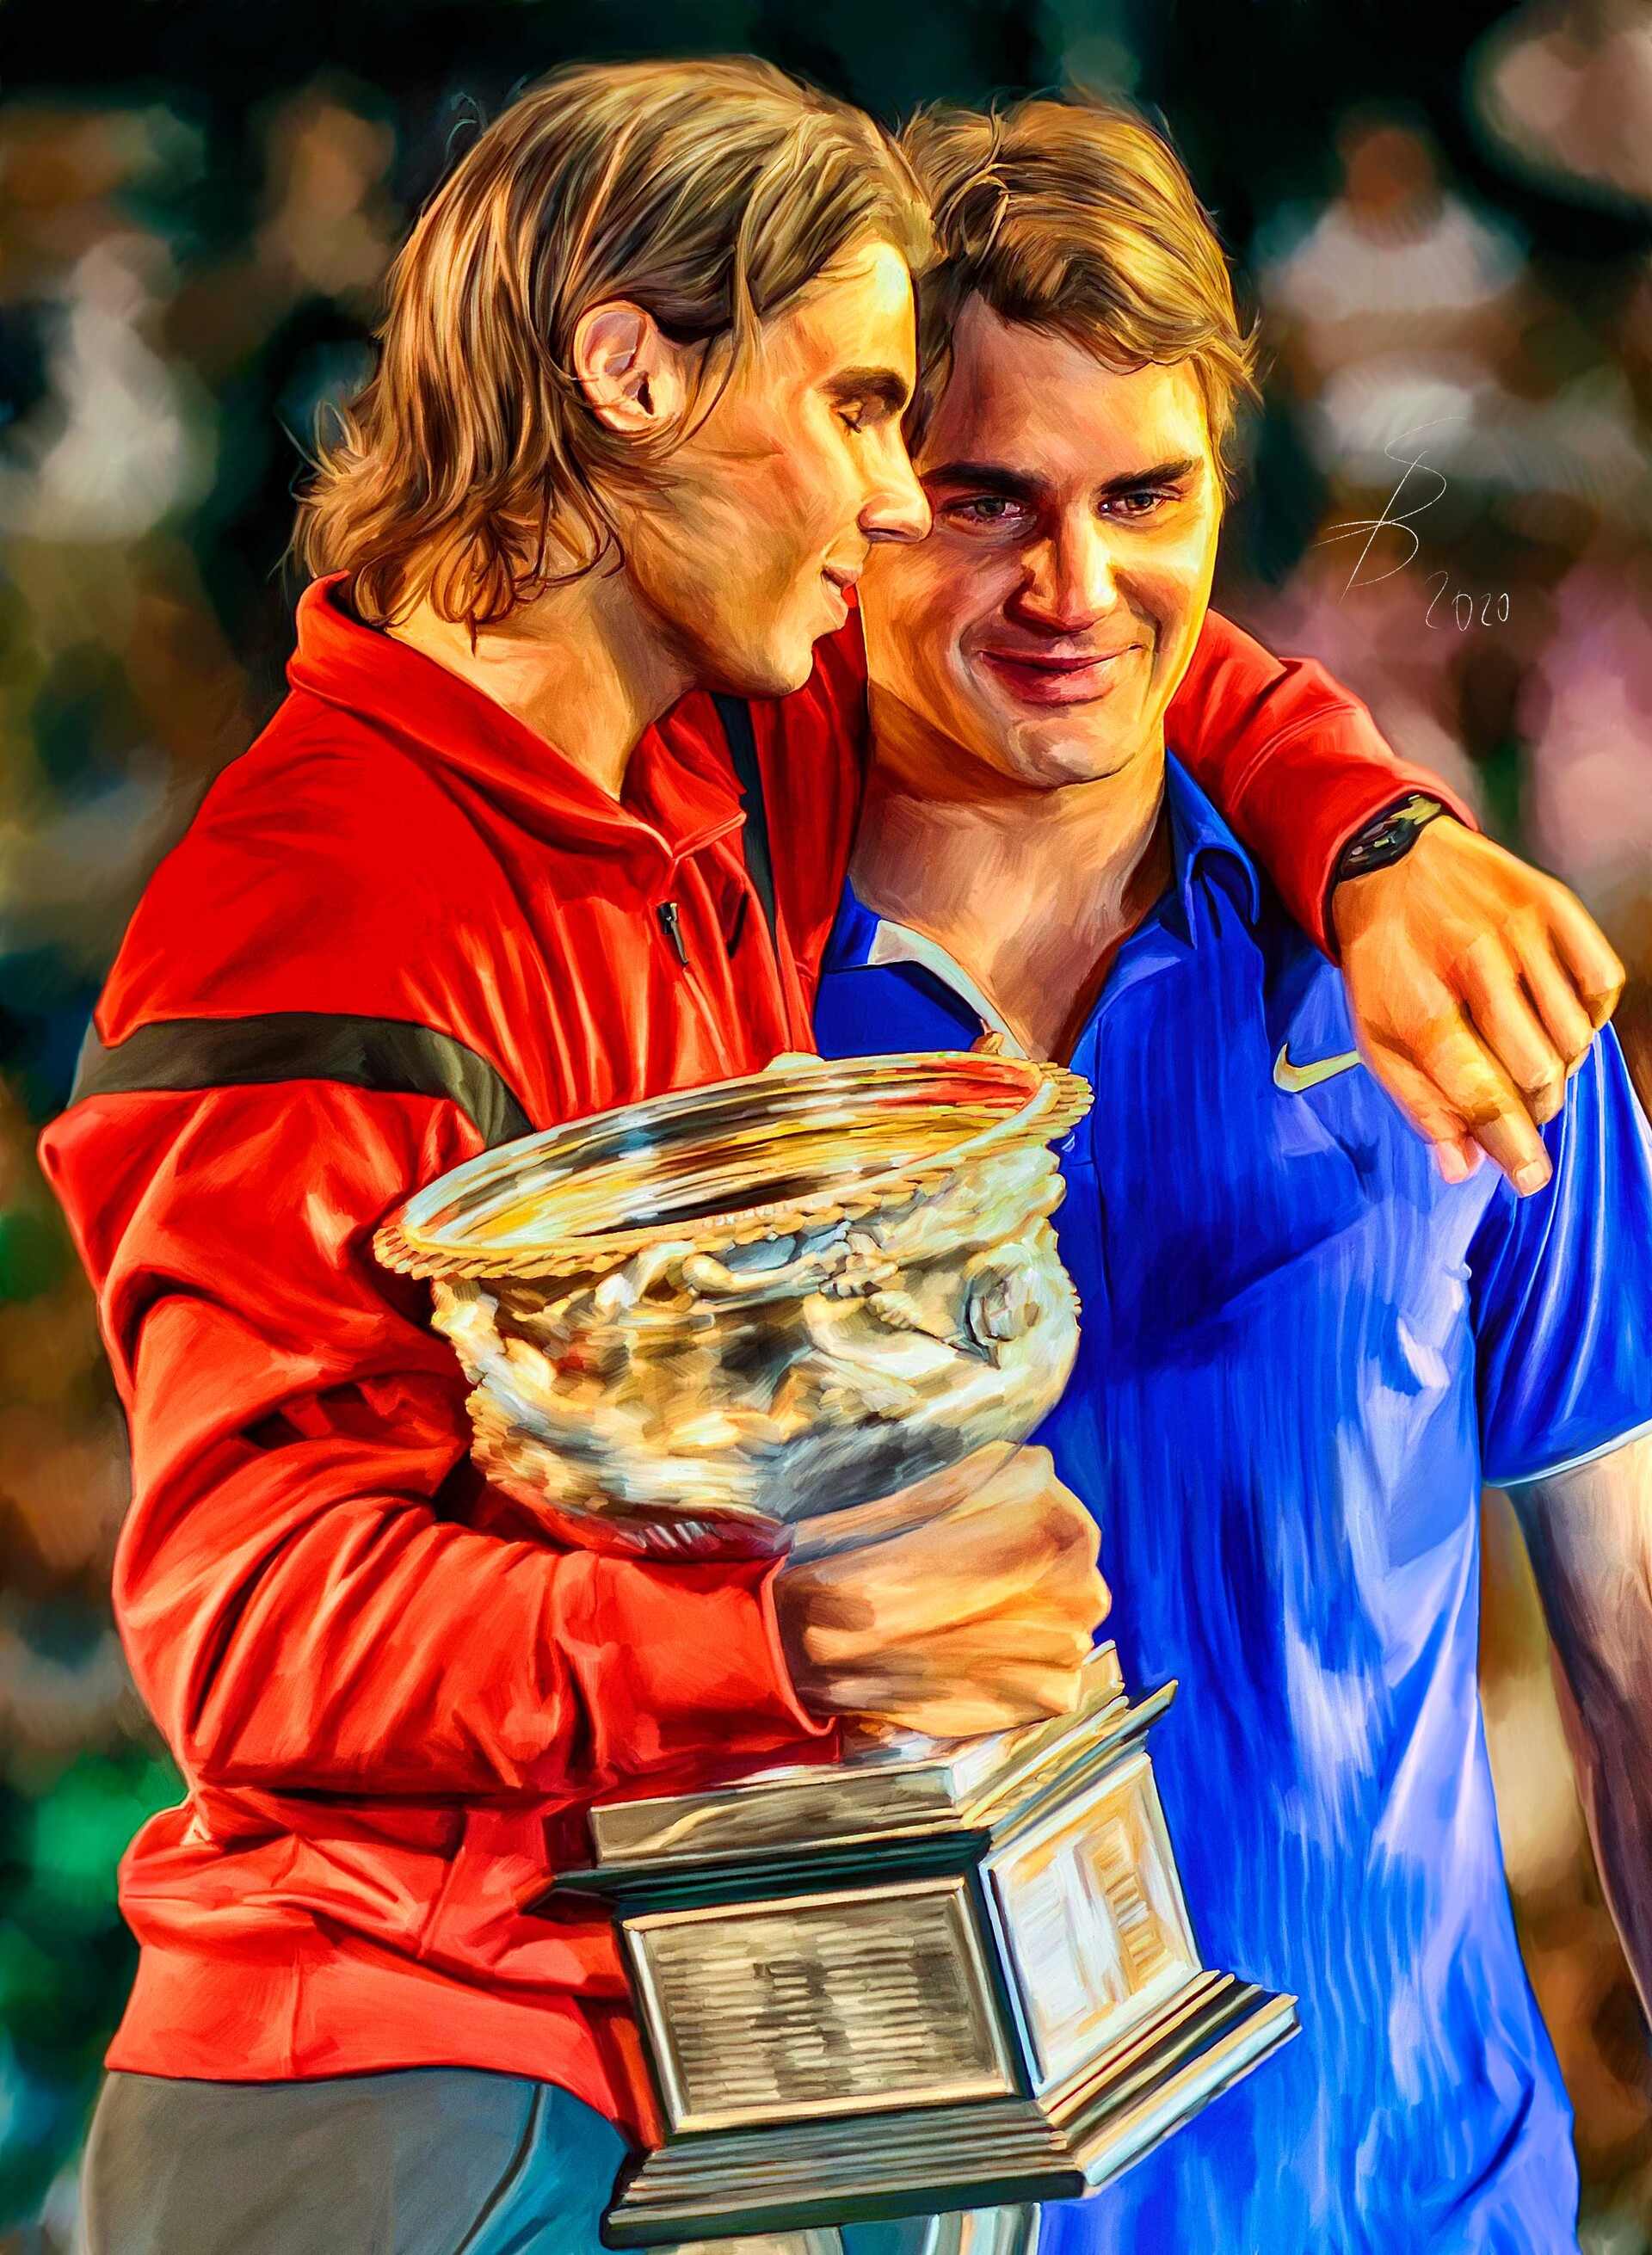 Følsom trend Problem ArtStation - Roger Federer and Rafa Nadal at Australian Open 2009. Digital  artwork tennis poster., Sam Brannan